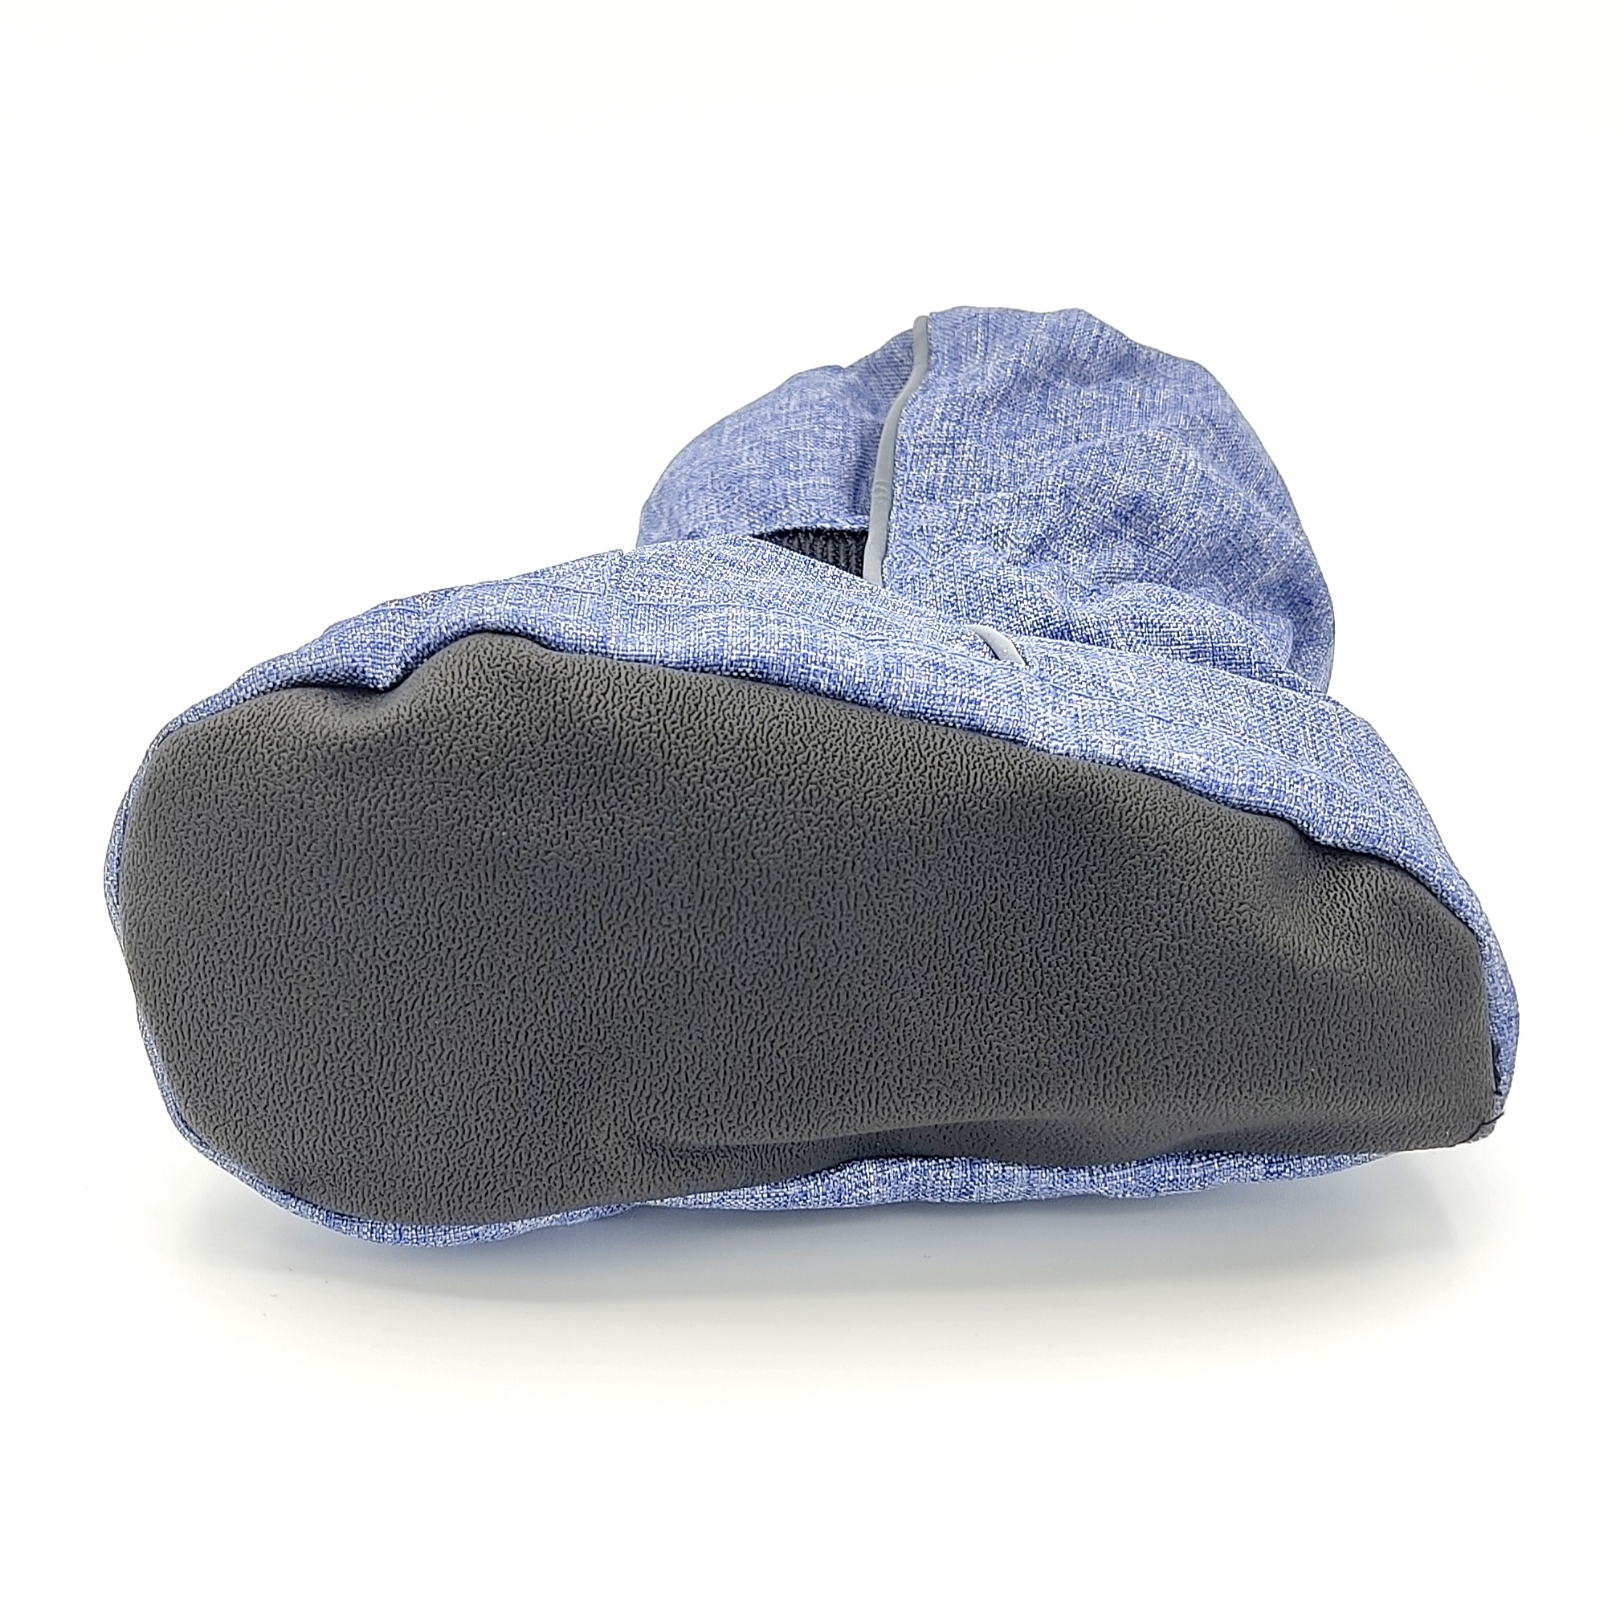 surchaussure Thermo Booties doublée en polaire playshoes 194002-3 bleu jean sur la boutique Liberty Pieds-1